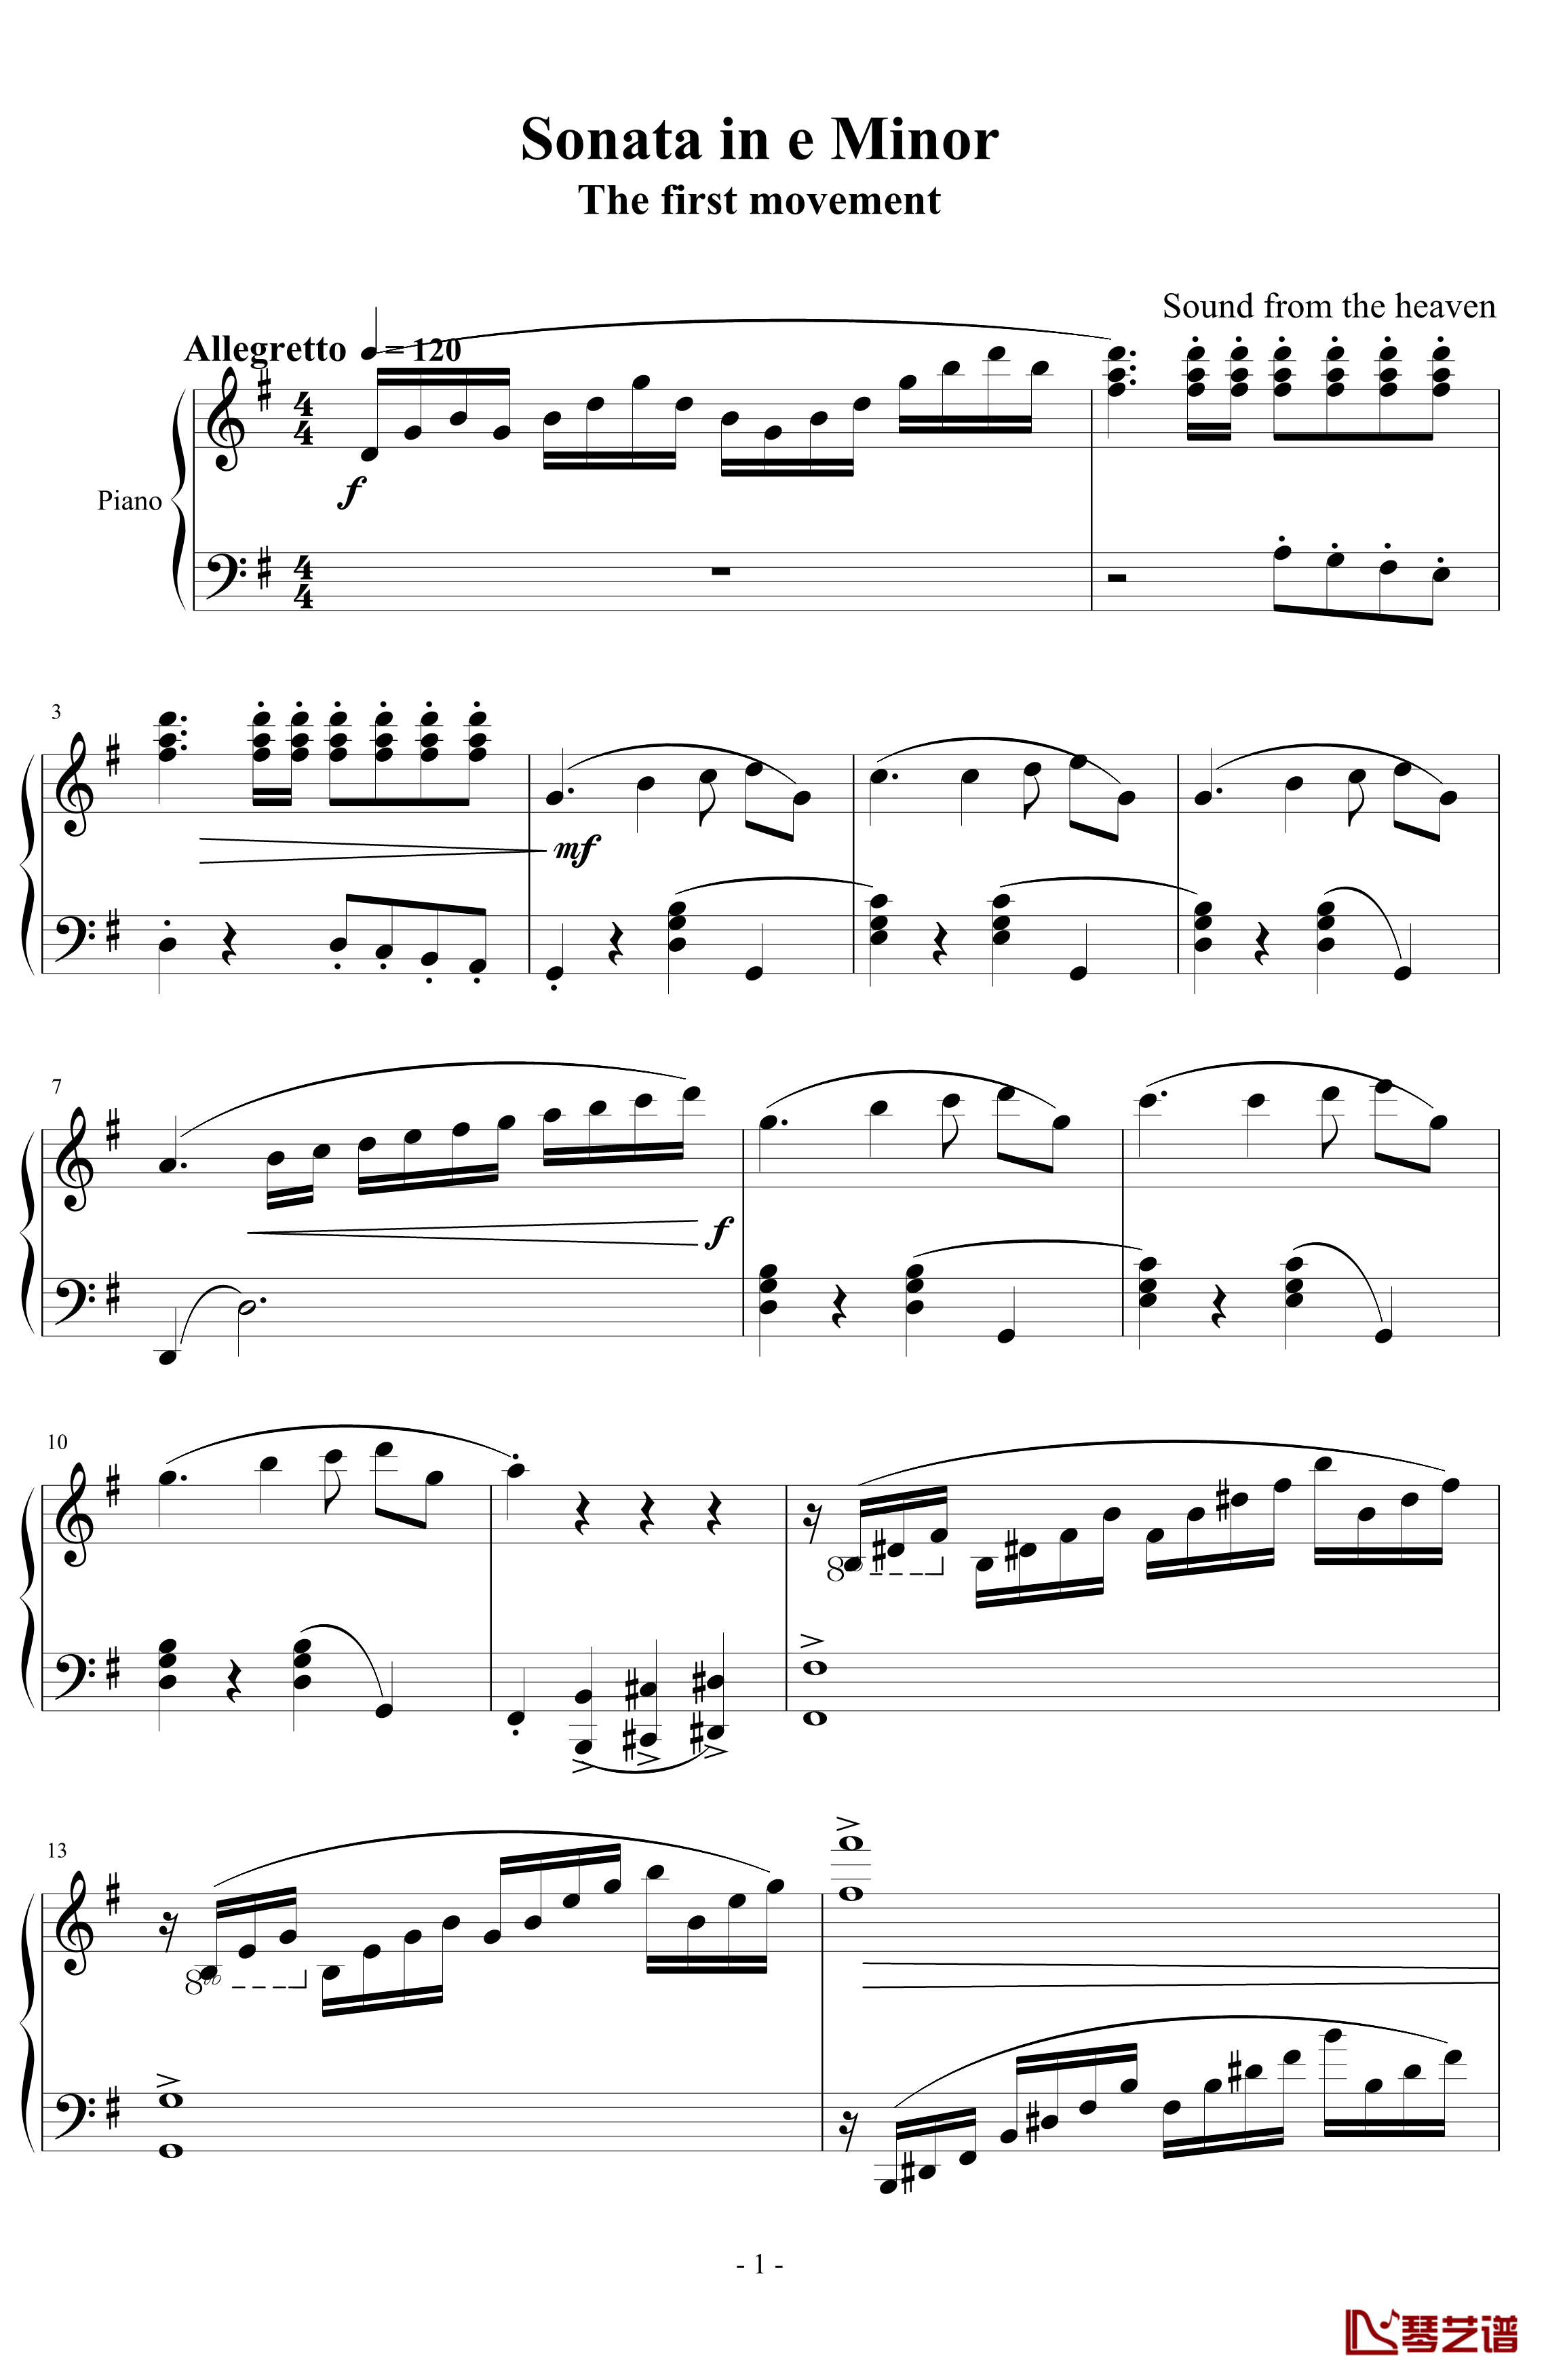 e小调小奏鸣曲钢琴谱 第一乐章-天籁传声1